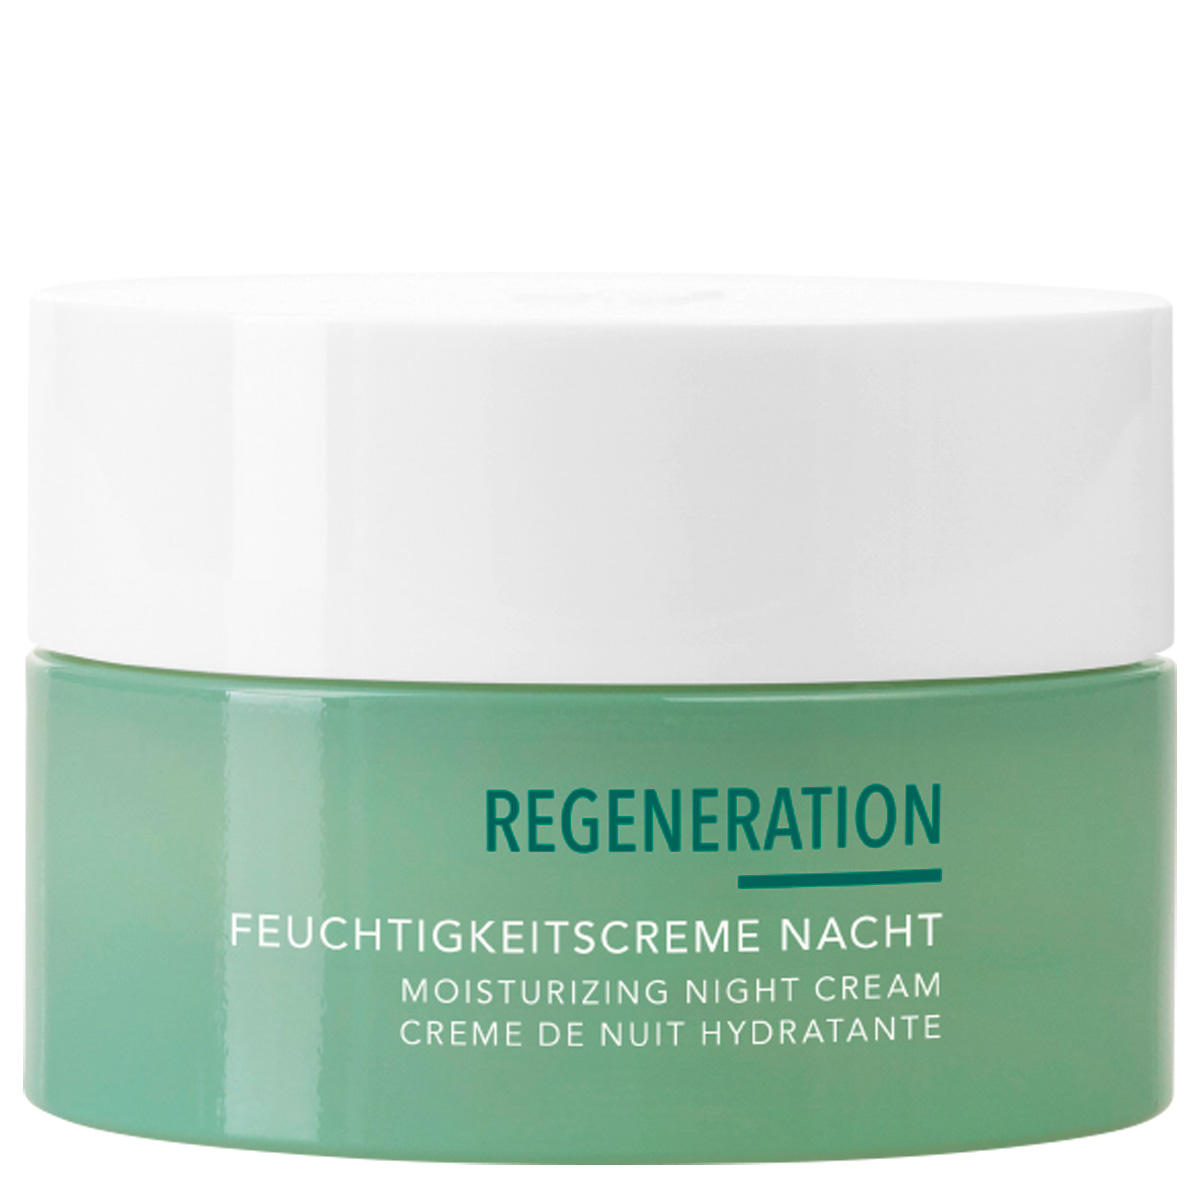 Charlotte Meentzen Regeneration Feuchtigkeitscreme Nacht 50 ml - 1